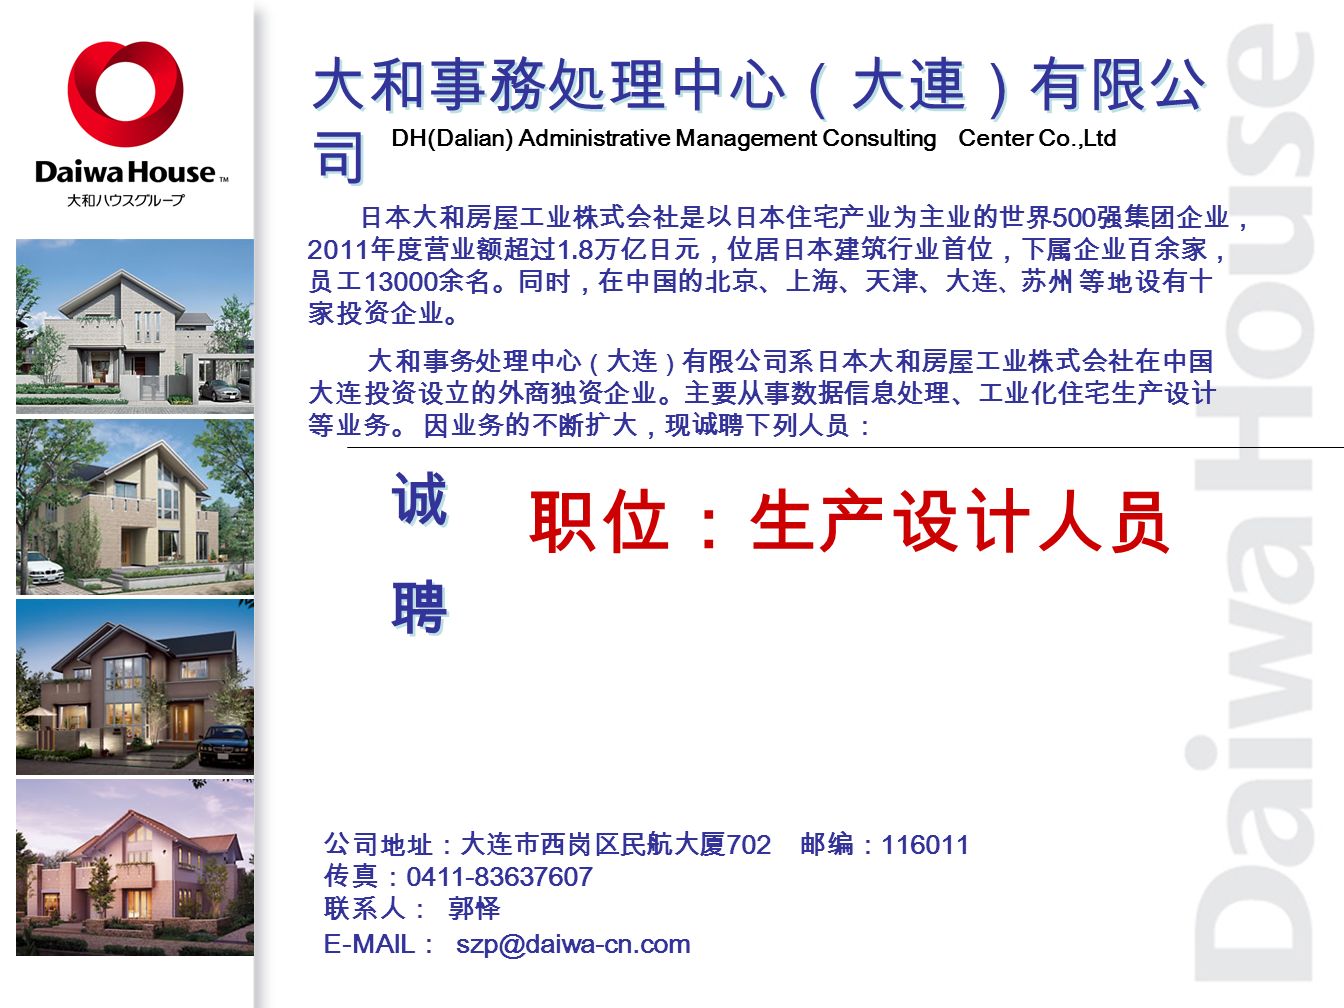 大和事務処理中心（大連）有限公 司 DH(Dalian) Administrative Management Consulting Center Co.,Ltd 日本大和房屋工业株式会社是以日本住宅产业为主业的世界 500 强集团企业， 2011 年度营业额超过 1.8 万亿日元，位居日本建筑行业首位，下属企业百余家， 员工 余名。同时，在中国的北京、上海、天津、大连 、 苏州 等地设有十 家投资企业。 大和事务处理中心 （ 大连 ） 有限公司系日本大和房屋工业株式会社在中国 大连投资设立的外商独资企业。主要从事数据信息处理、工业化住宅生产设计 等业务。 因业务的不断扩大，现诚聘下列人员： 职位：生产设计人员 公司地址：大连市西岗区民航大厦 702 邮编： 传真： 联系人： 郭怿 诚聘诚聘 诚聘诚聘  ：